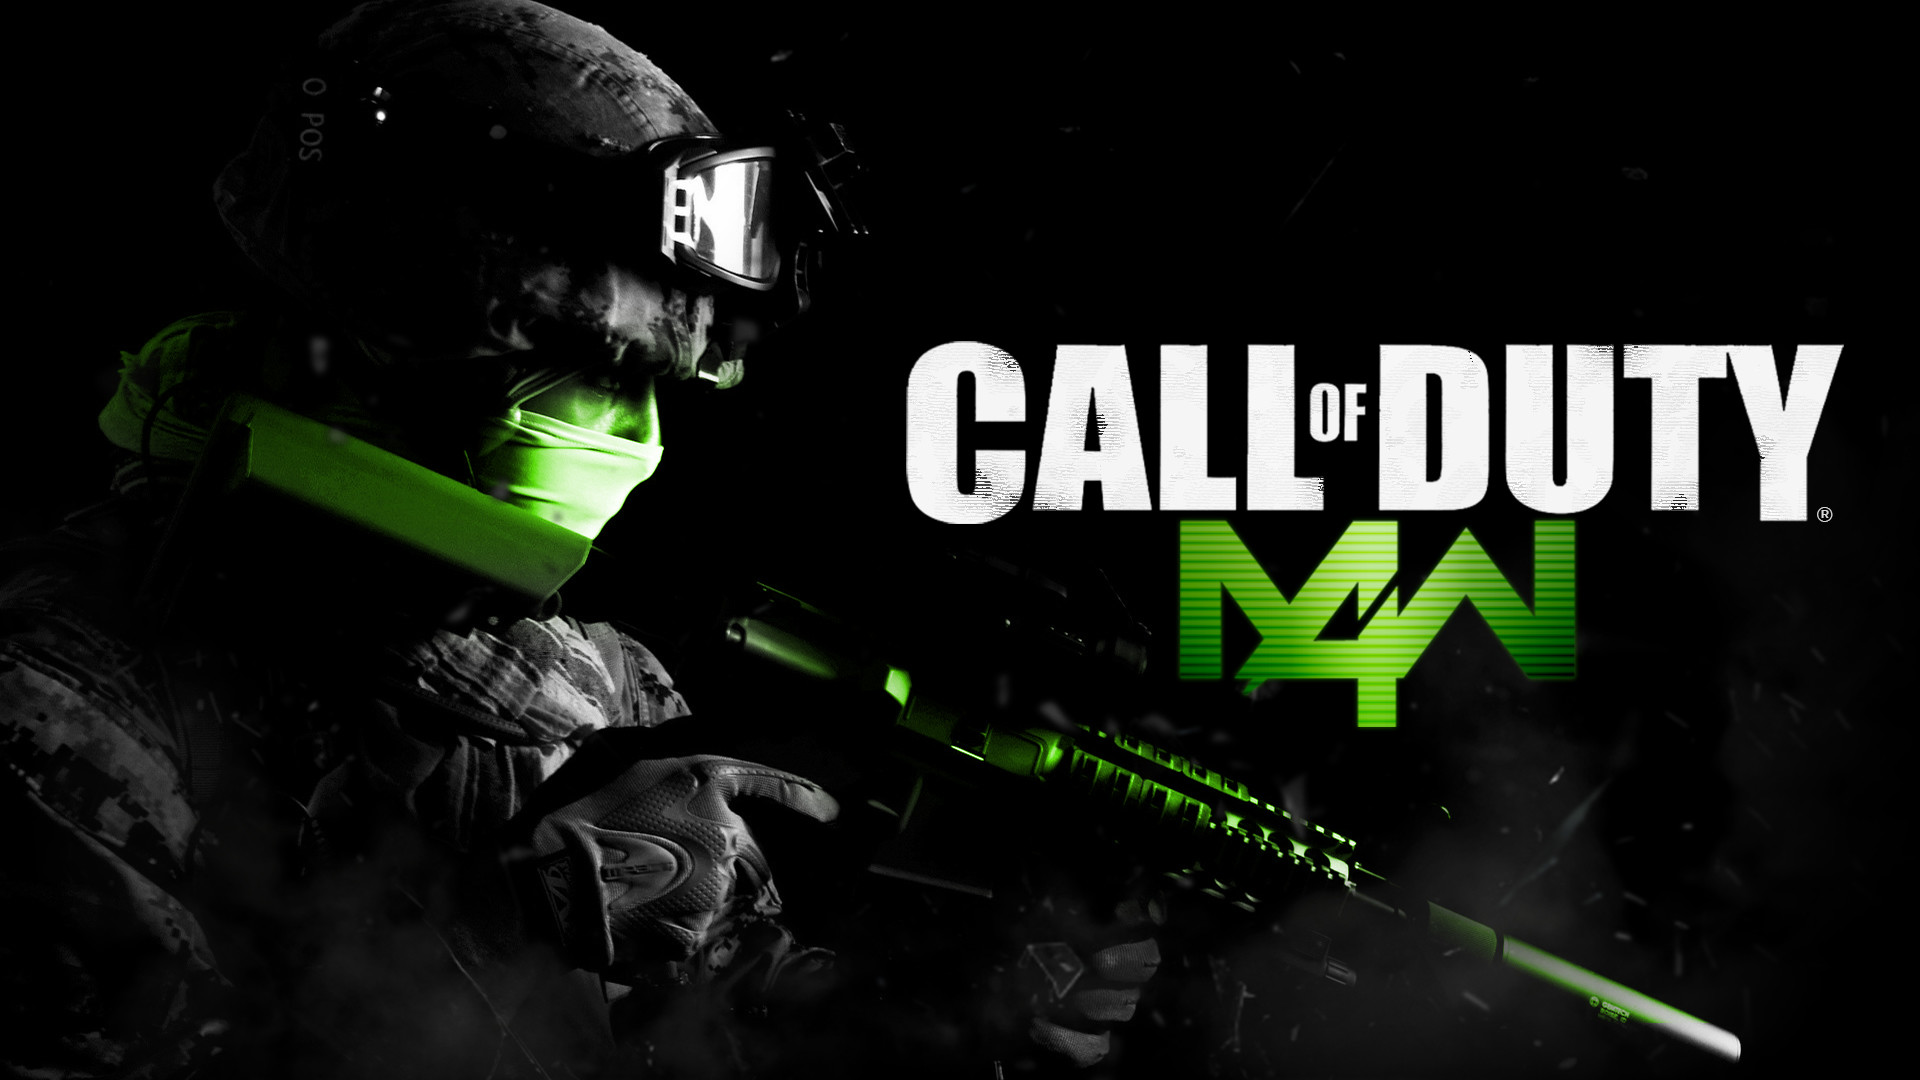 1920x1080 Call of Duty Modern Warfare 4 warrior soldier weapon gun f wallpaper |   | 151878 | WallpaperUP